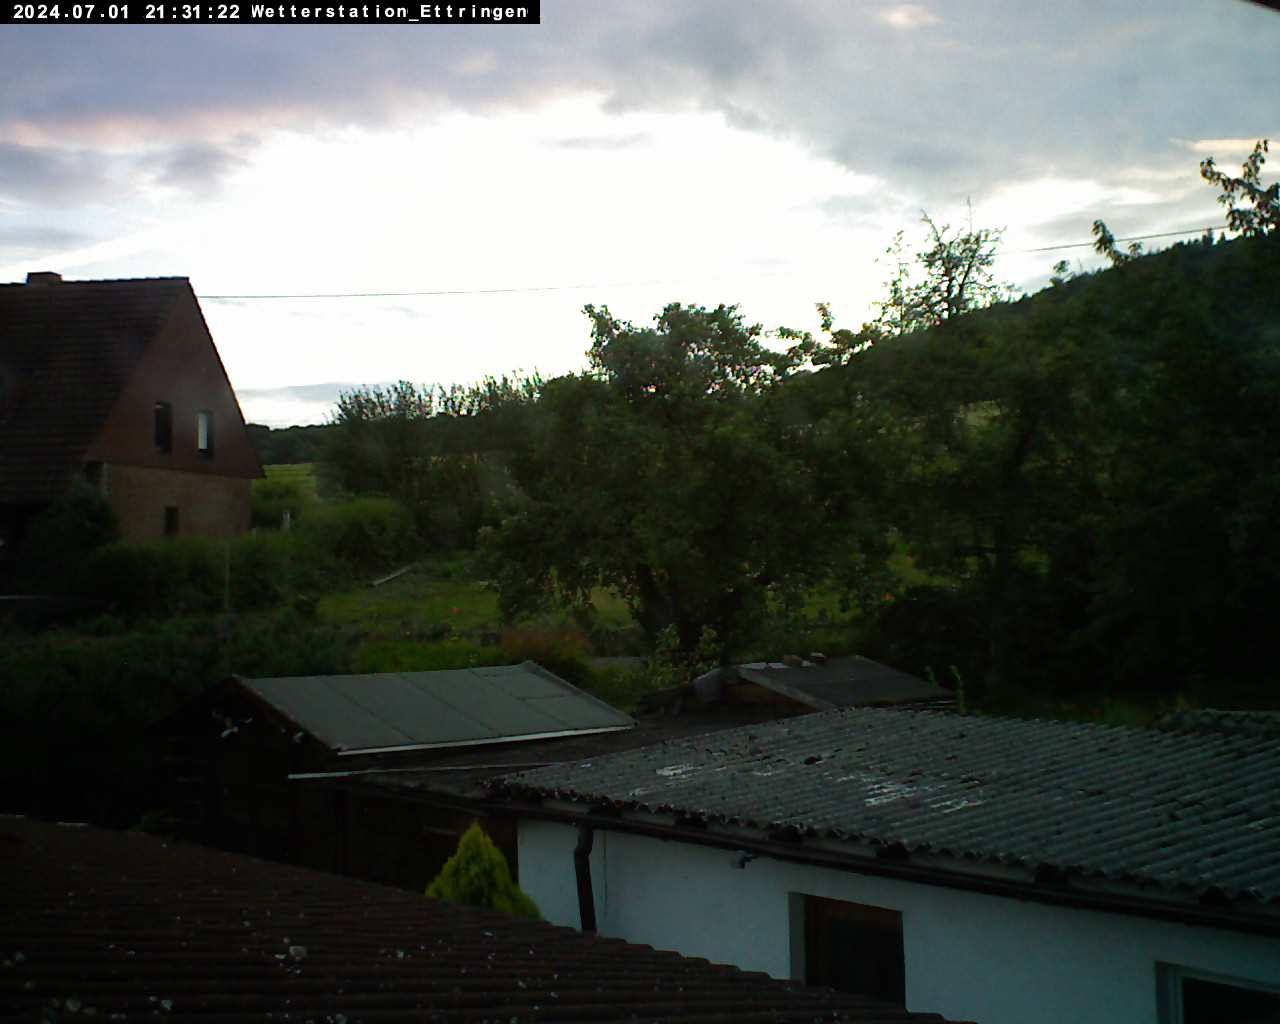 Webcam Ettringen: Wetter Webcam − Eifel - Wetterdienst.de